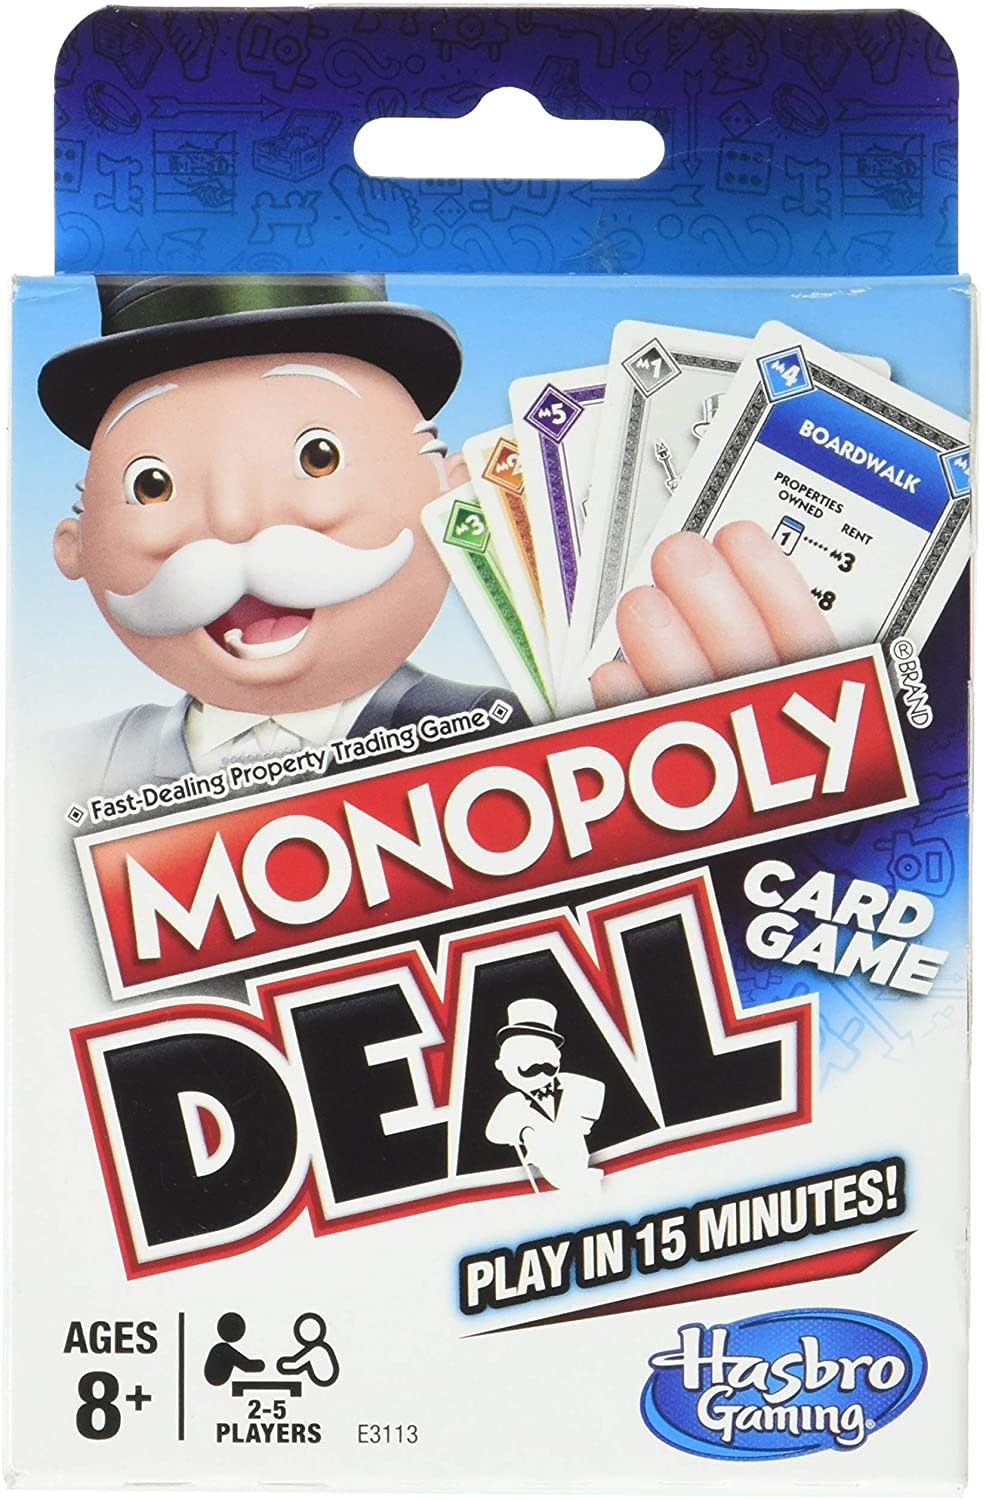 Monopoly Deal Card Game - Fair Game